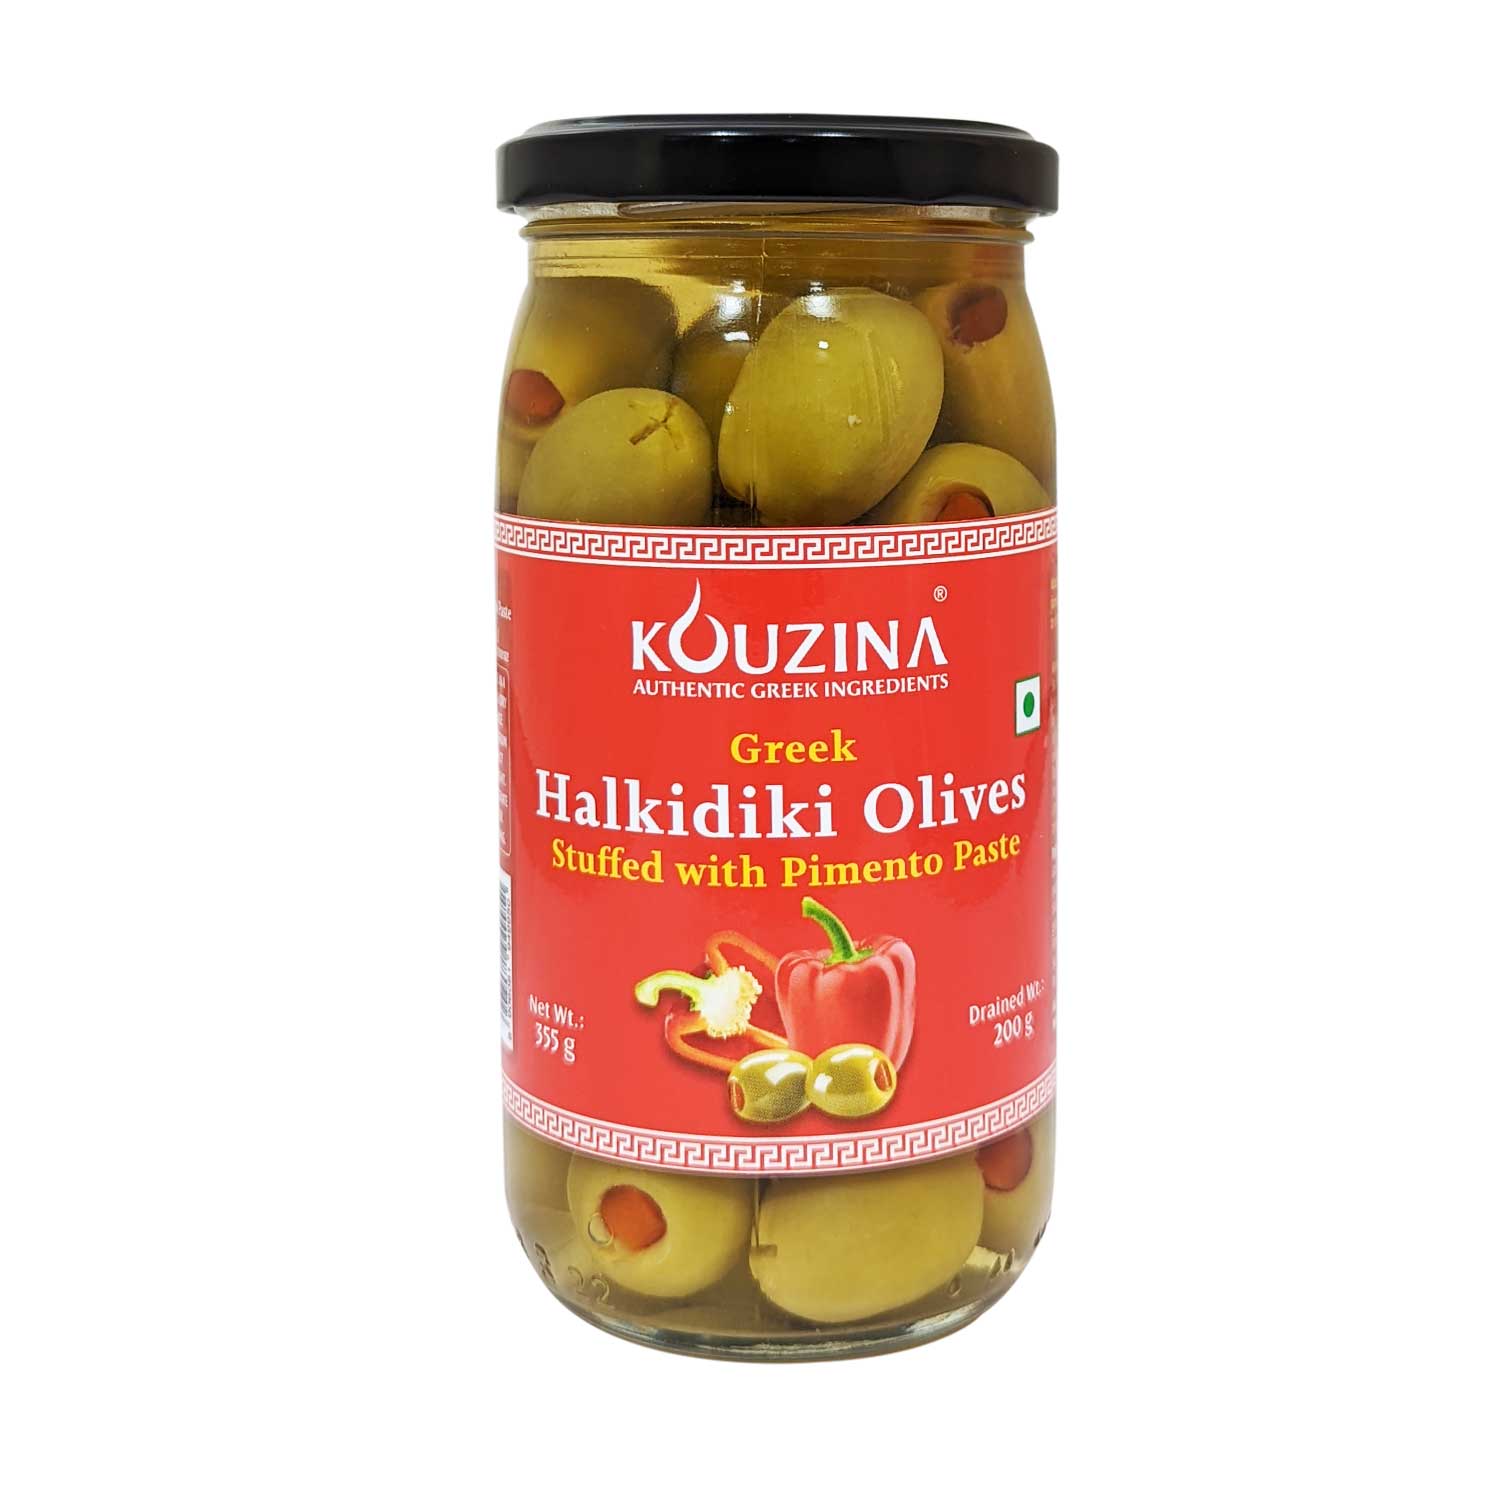 Kouzina Halkidiki Olives Stuffed with Pimento Paste, 200g